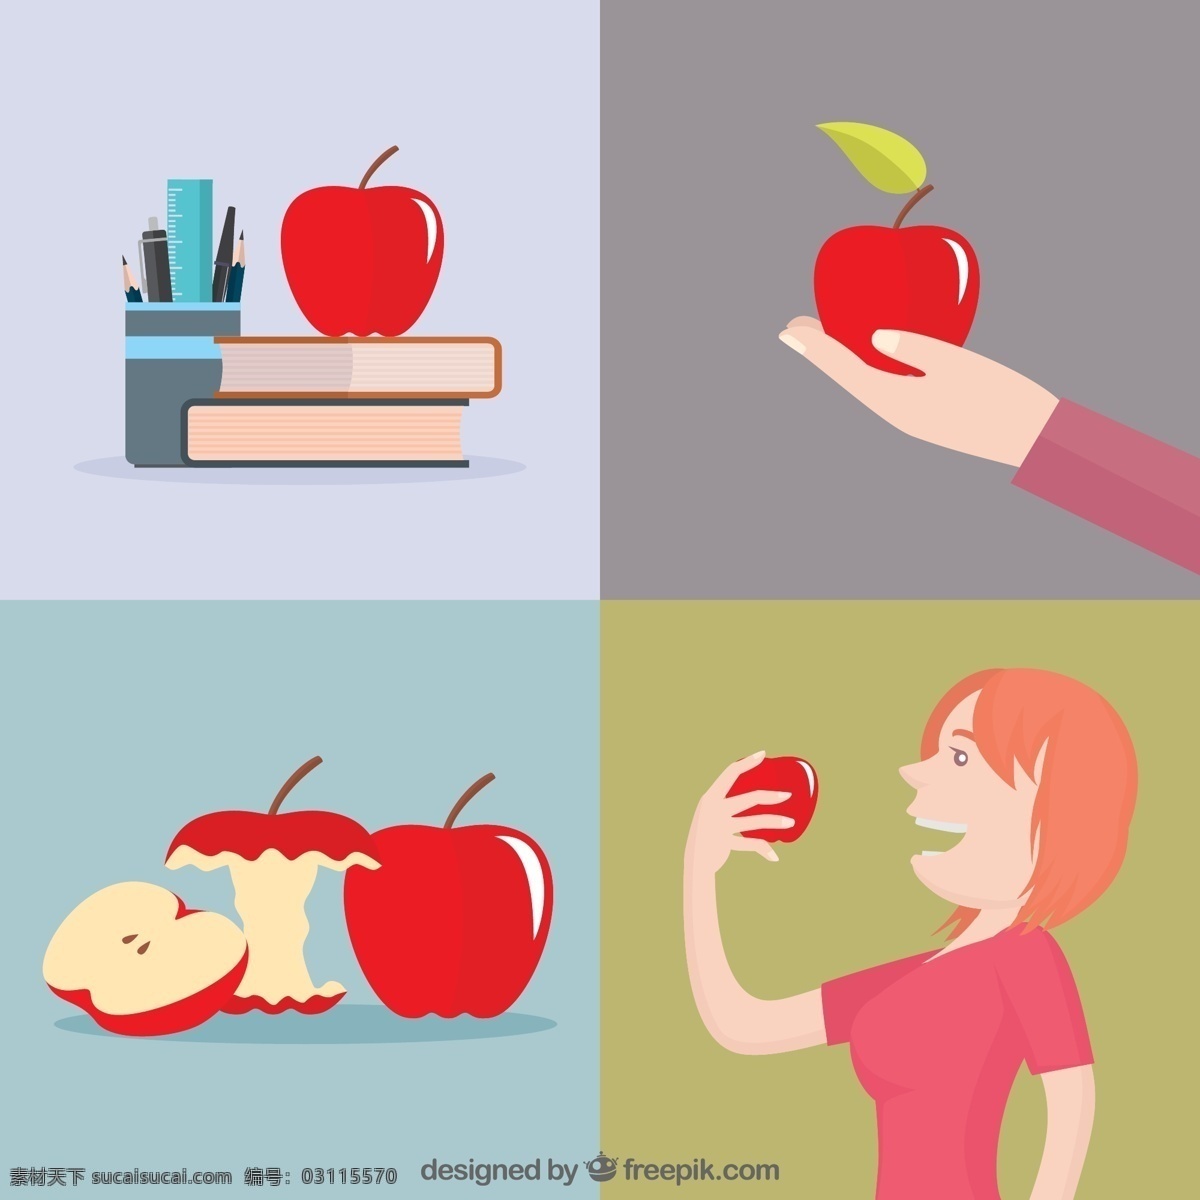 红苹果 插画 矢量 书本 笔筒 苹果 手臂 女子 苹果核 高清图片